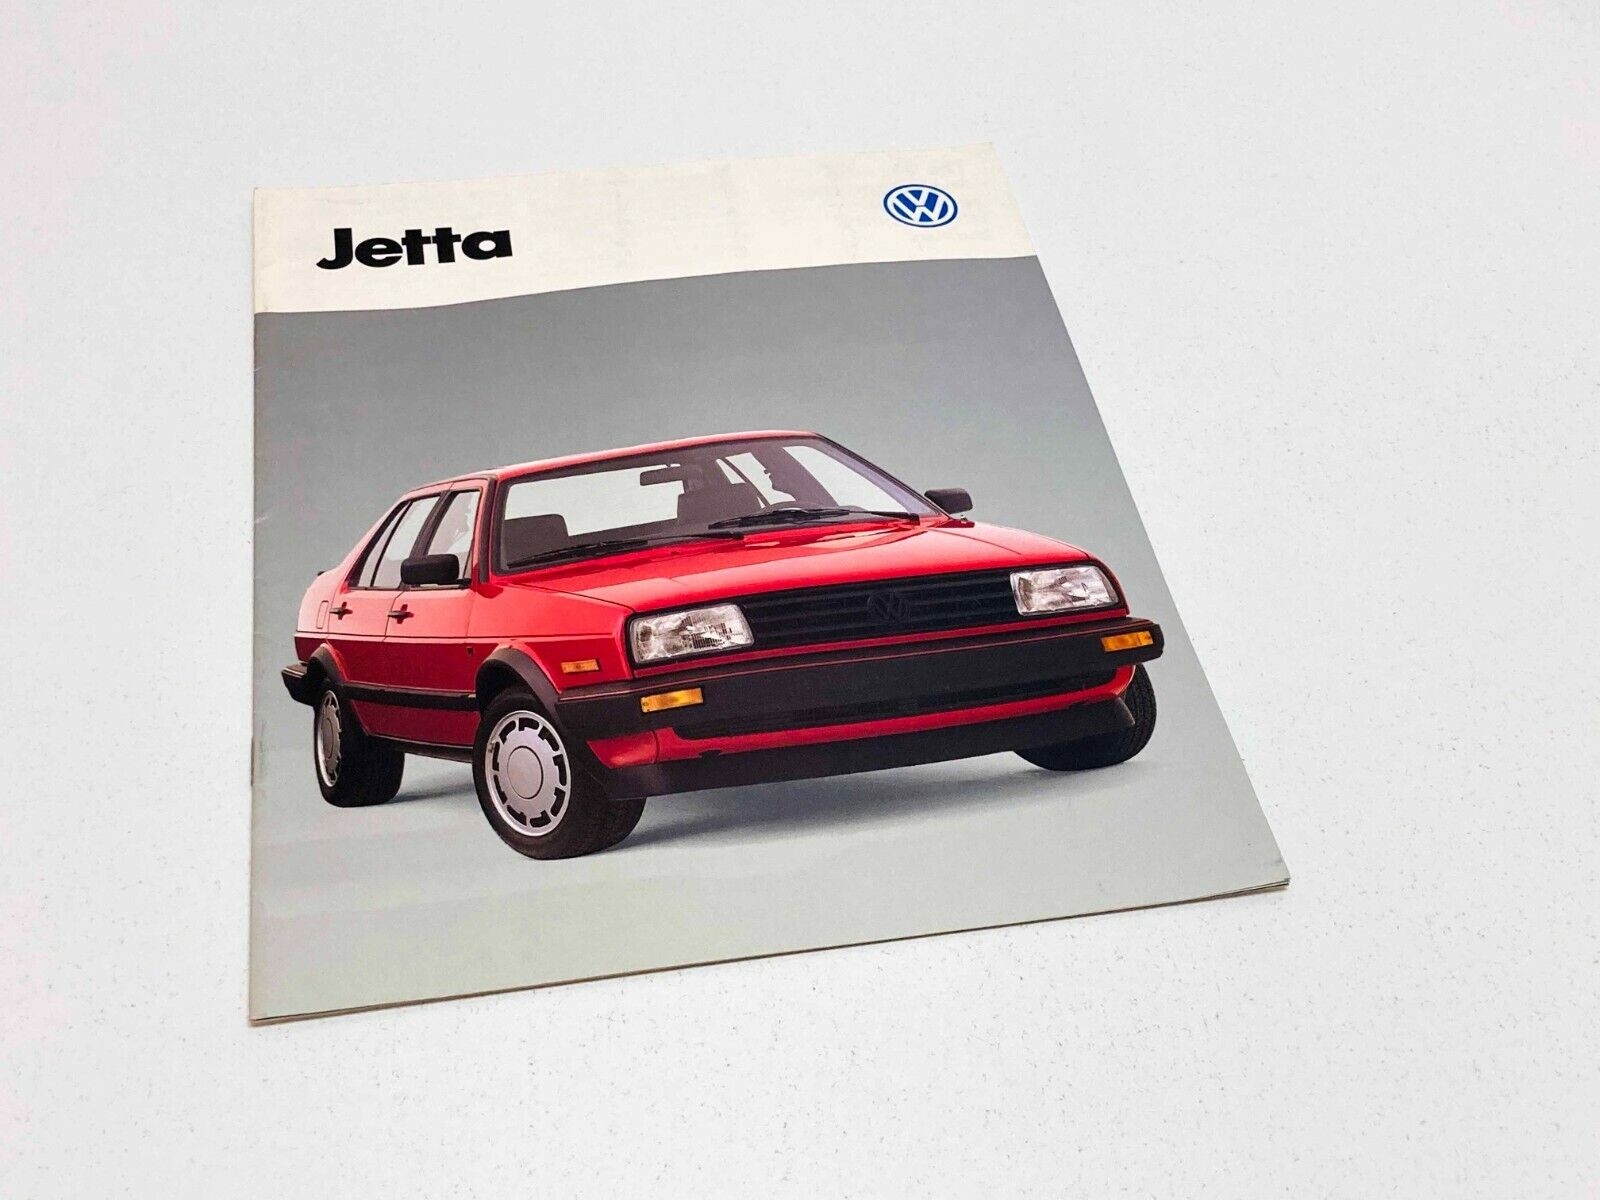 1988 Volkswagen Jetta Brochure